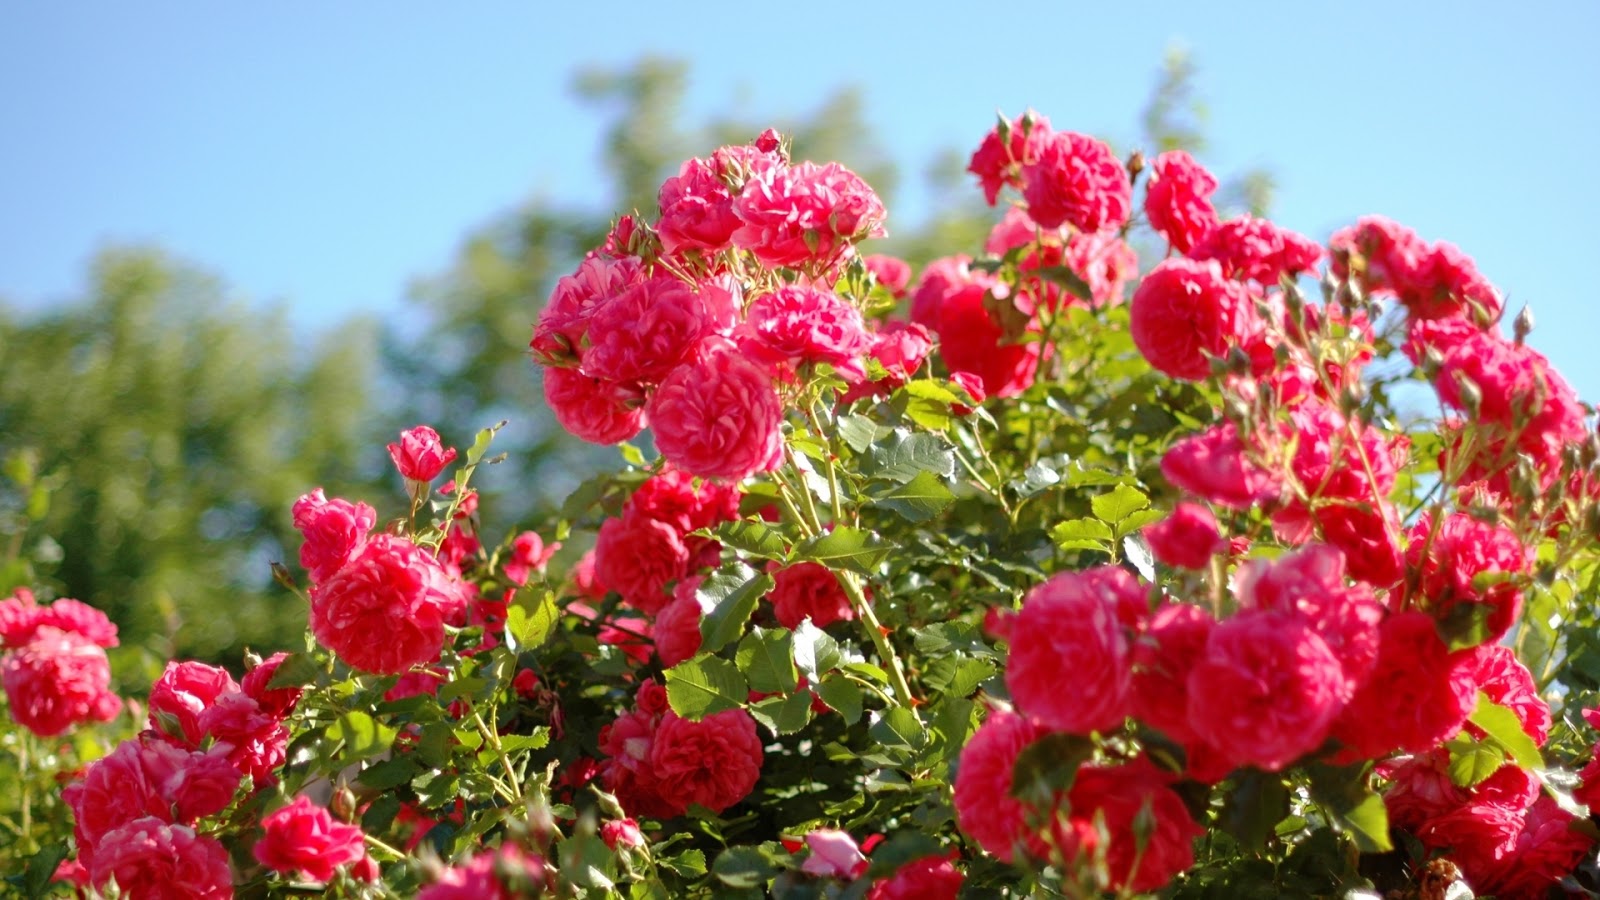 Rose Flower Garden Wallpaper